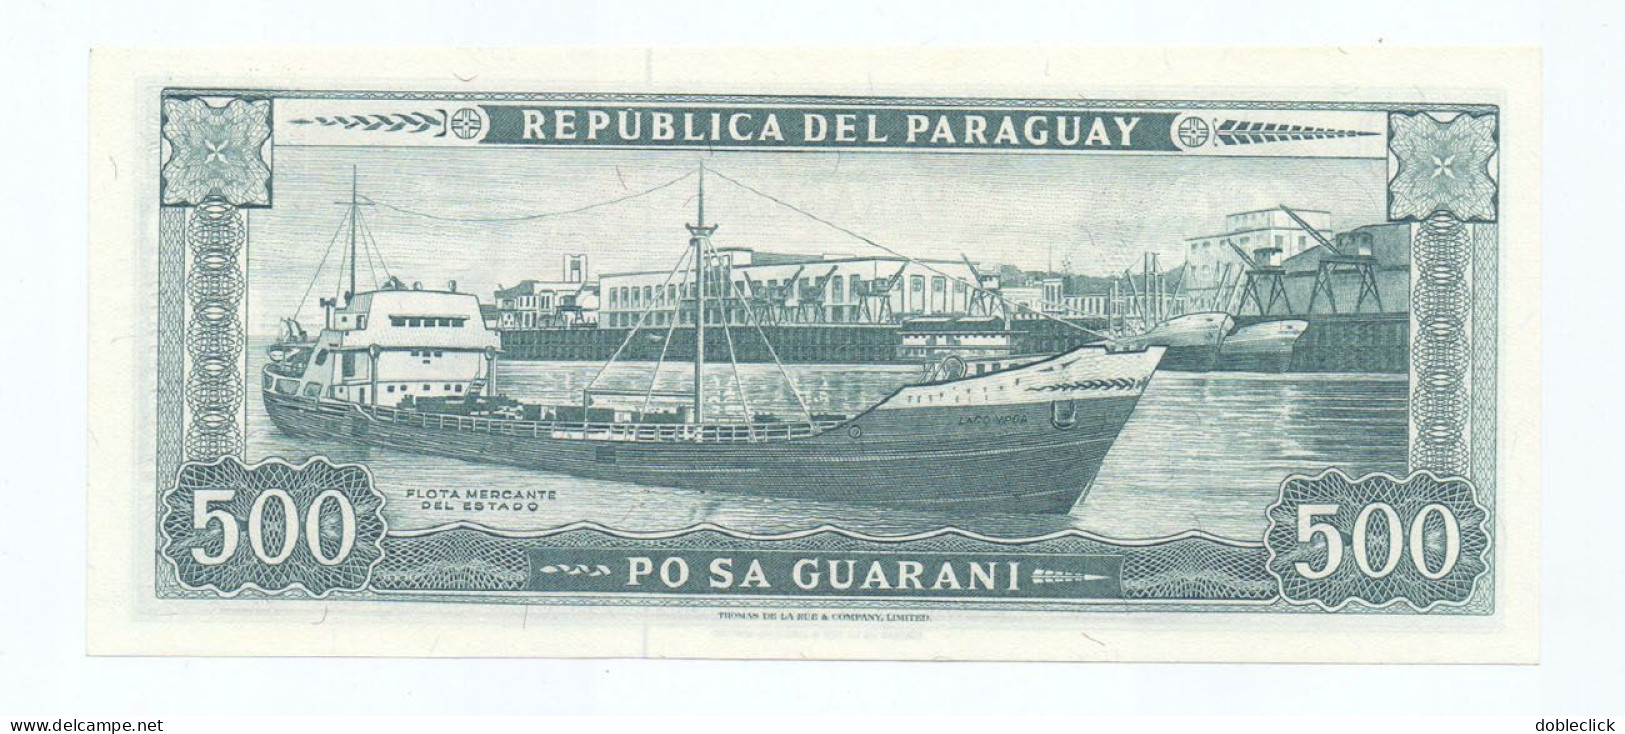 PARAGUAY - 500 GUARANIES P-206 - FALCON SILVA PAEZ SIGN. 1982 UNC - Paraguay